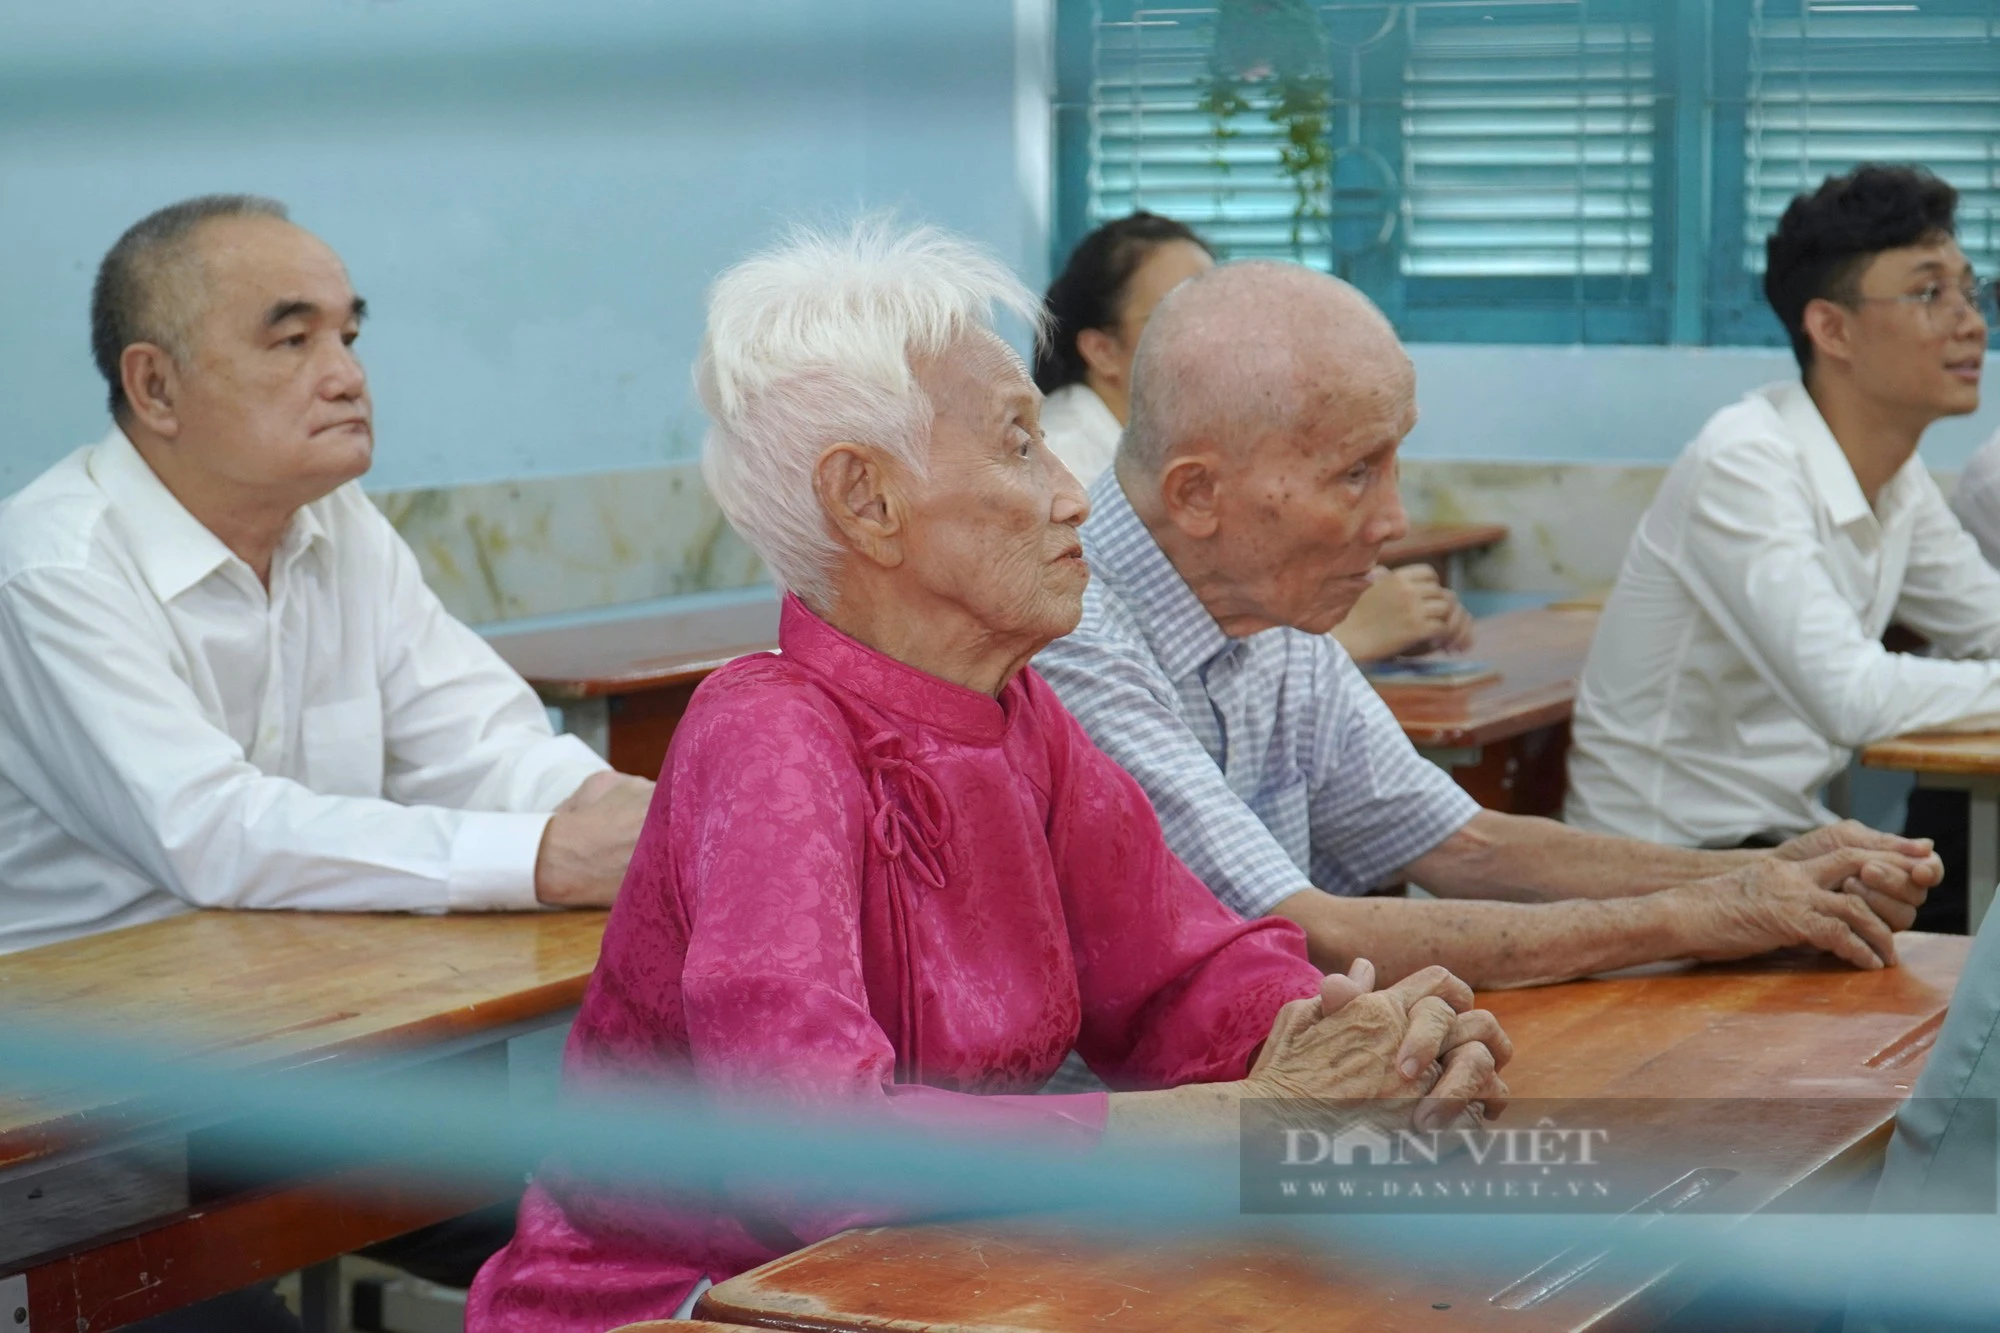 Lớp học đầy xúc động của các cựu giáo chức nhân ngày 20/11 - Ảnh 2.